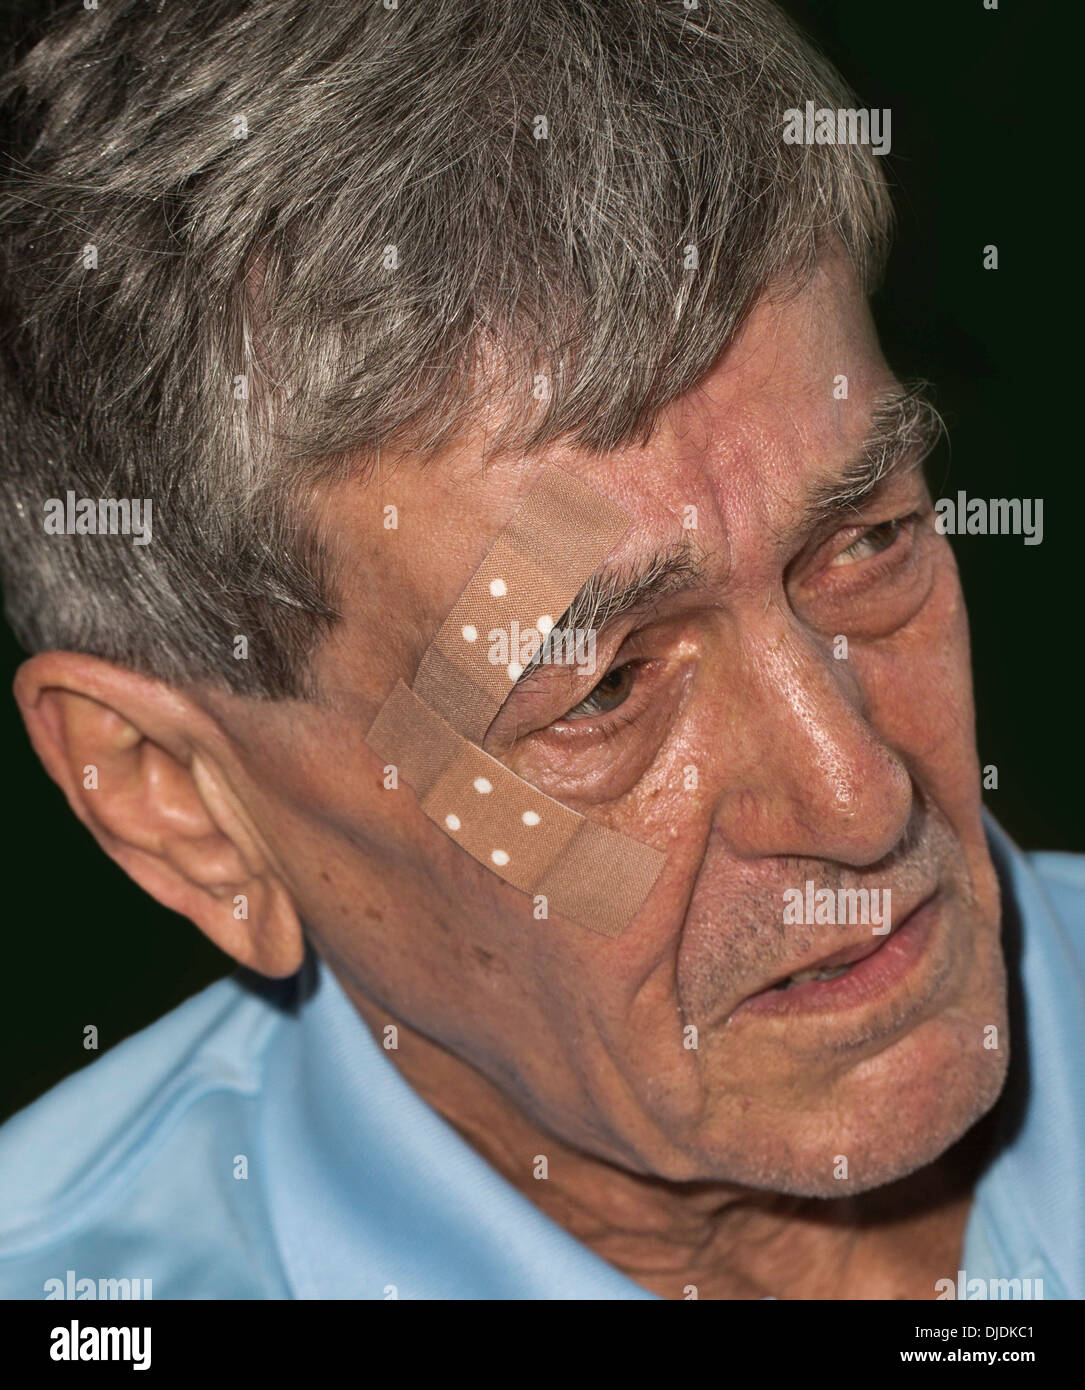 Älterer Mann mit Pflaster auf seinem Gesicht Stockfotografie - Alamy